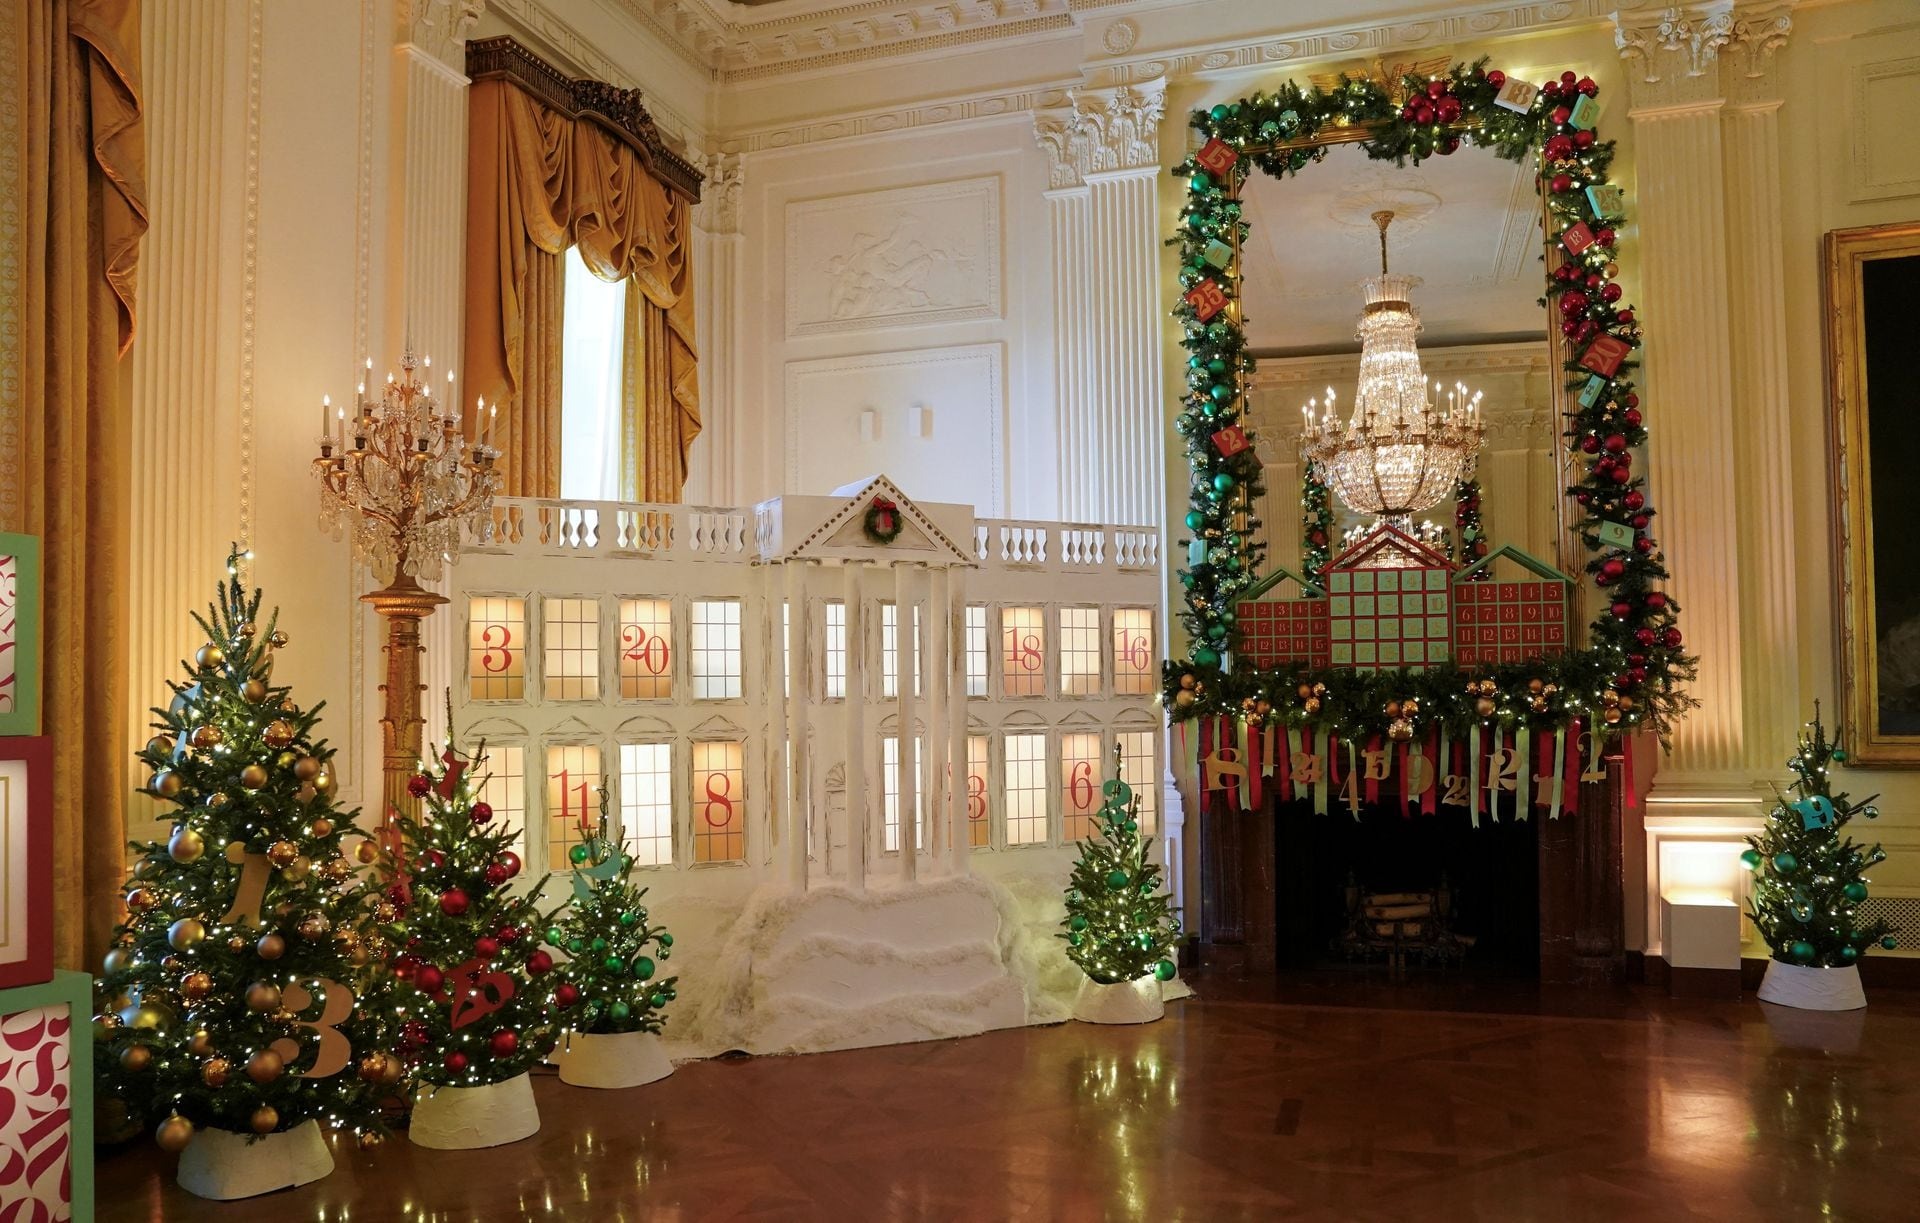 Nhà Trắng lung linh sắc màu đón Giáng sinh với 98 cây thông Noel và 140.000 bóng đèn - Ảnh 10.